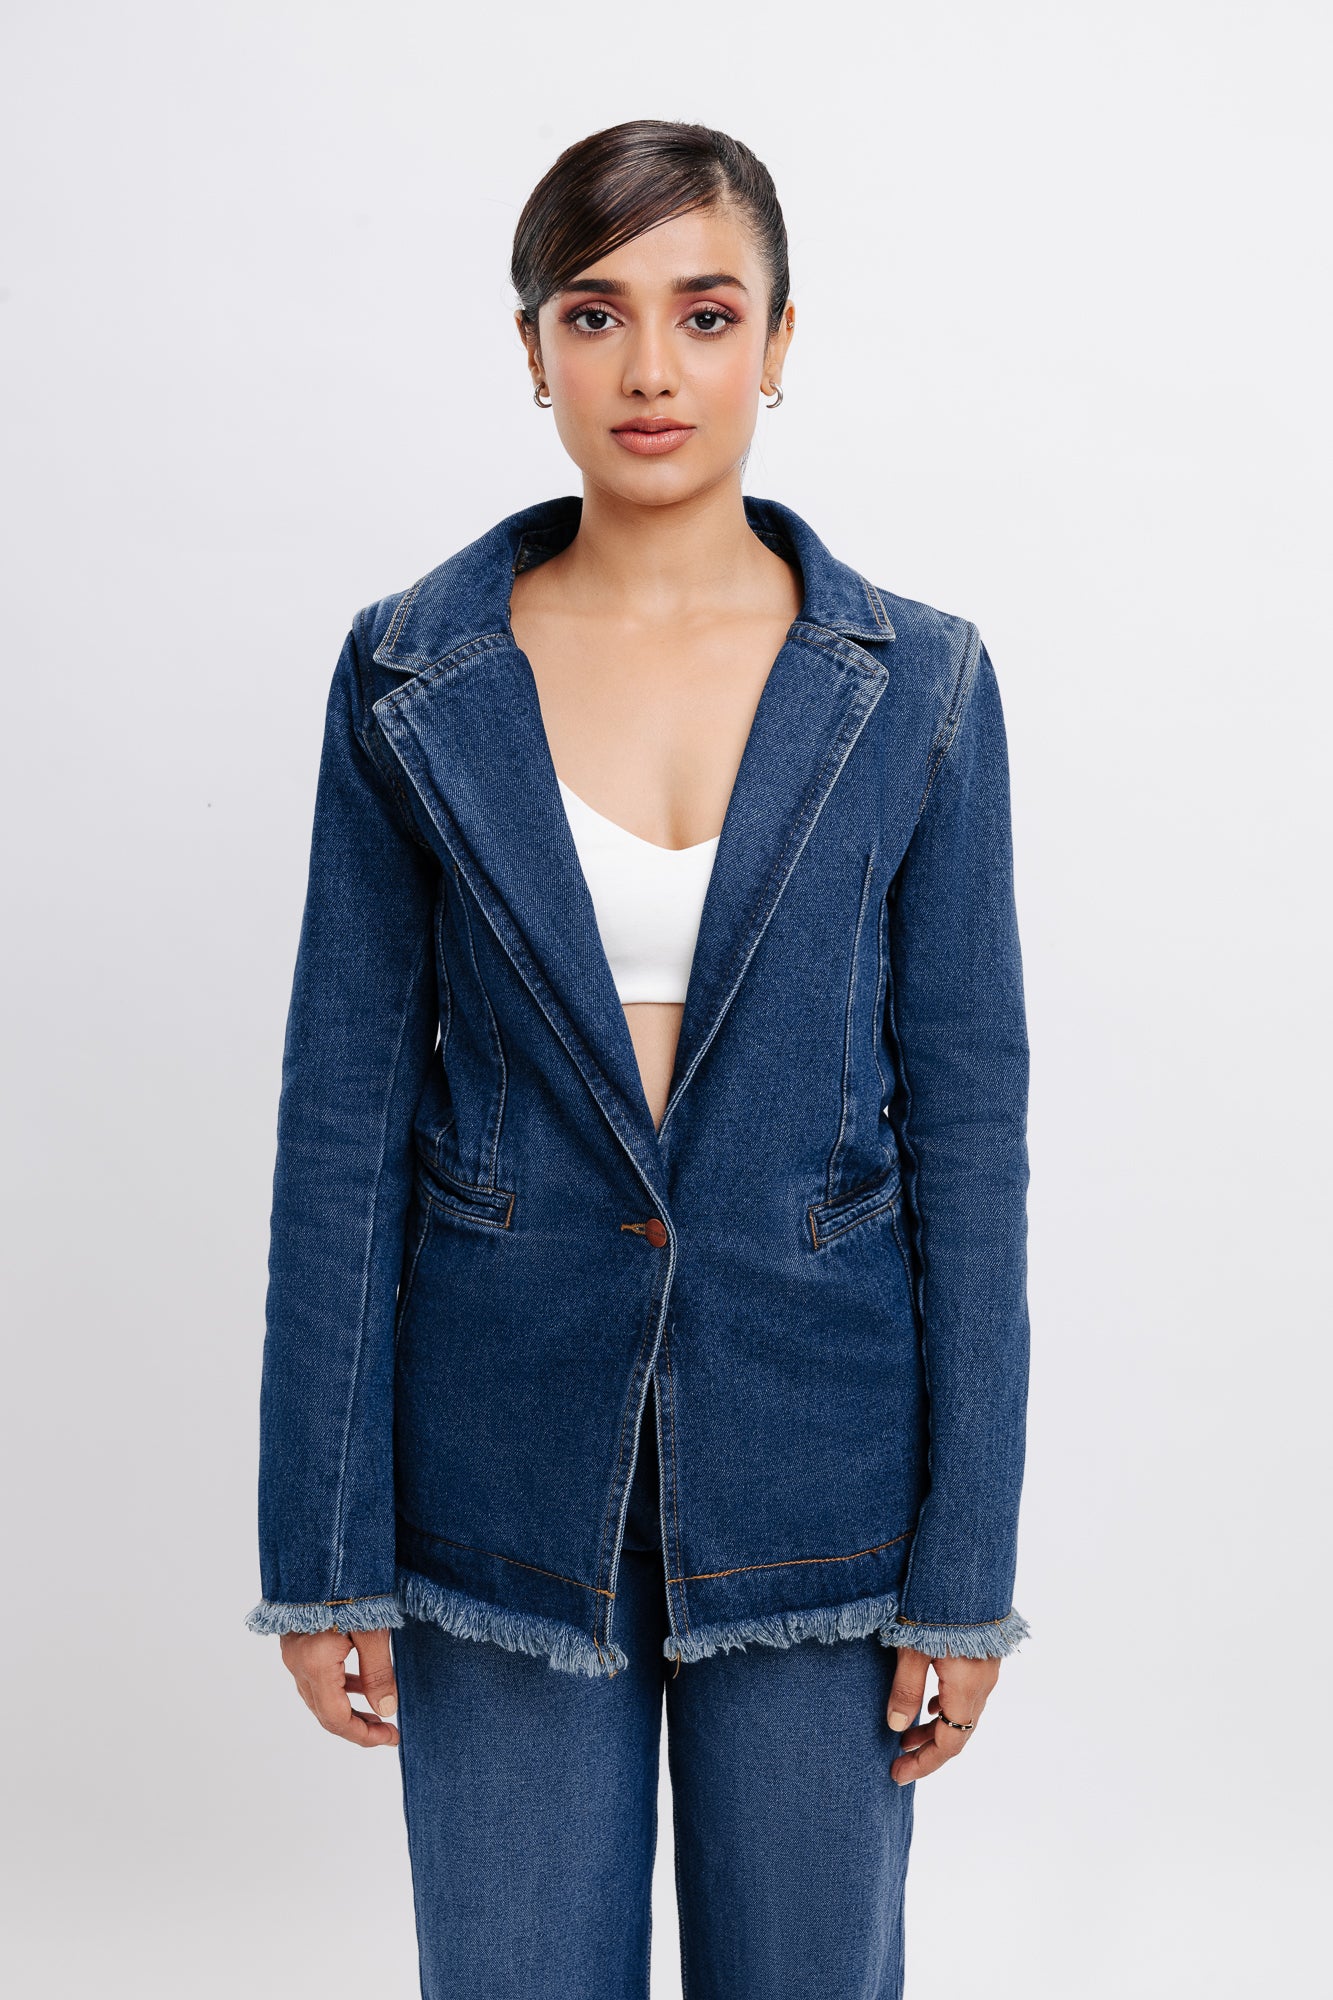 Buy Blue Jackets & Shrugs for Girls by ZALIO Online | Ajio.com